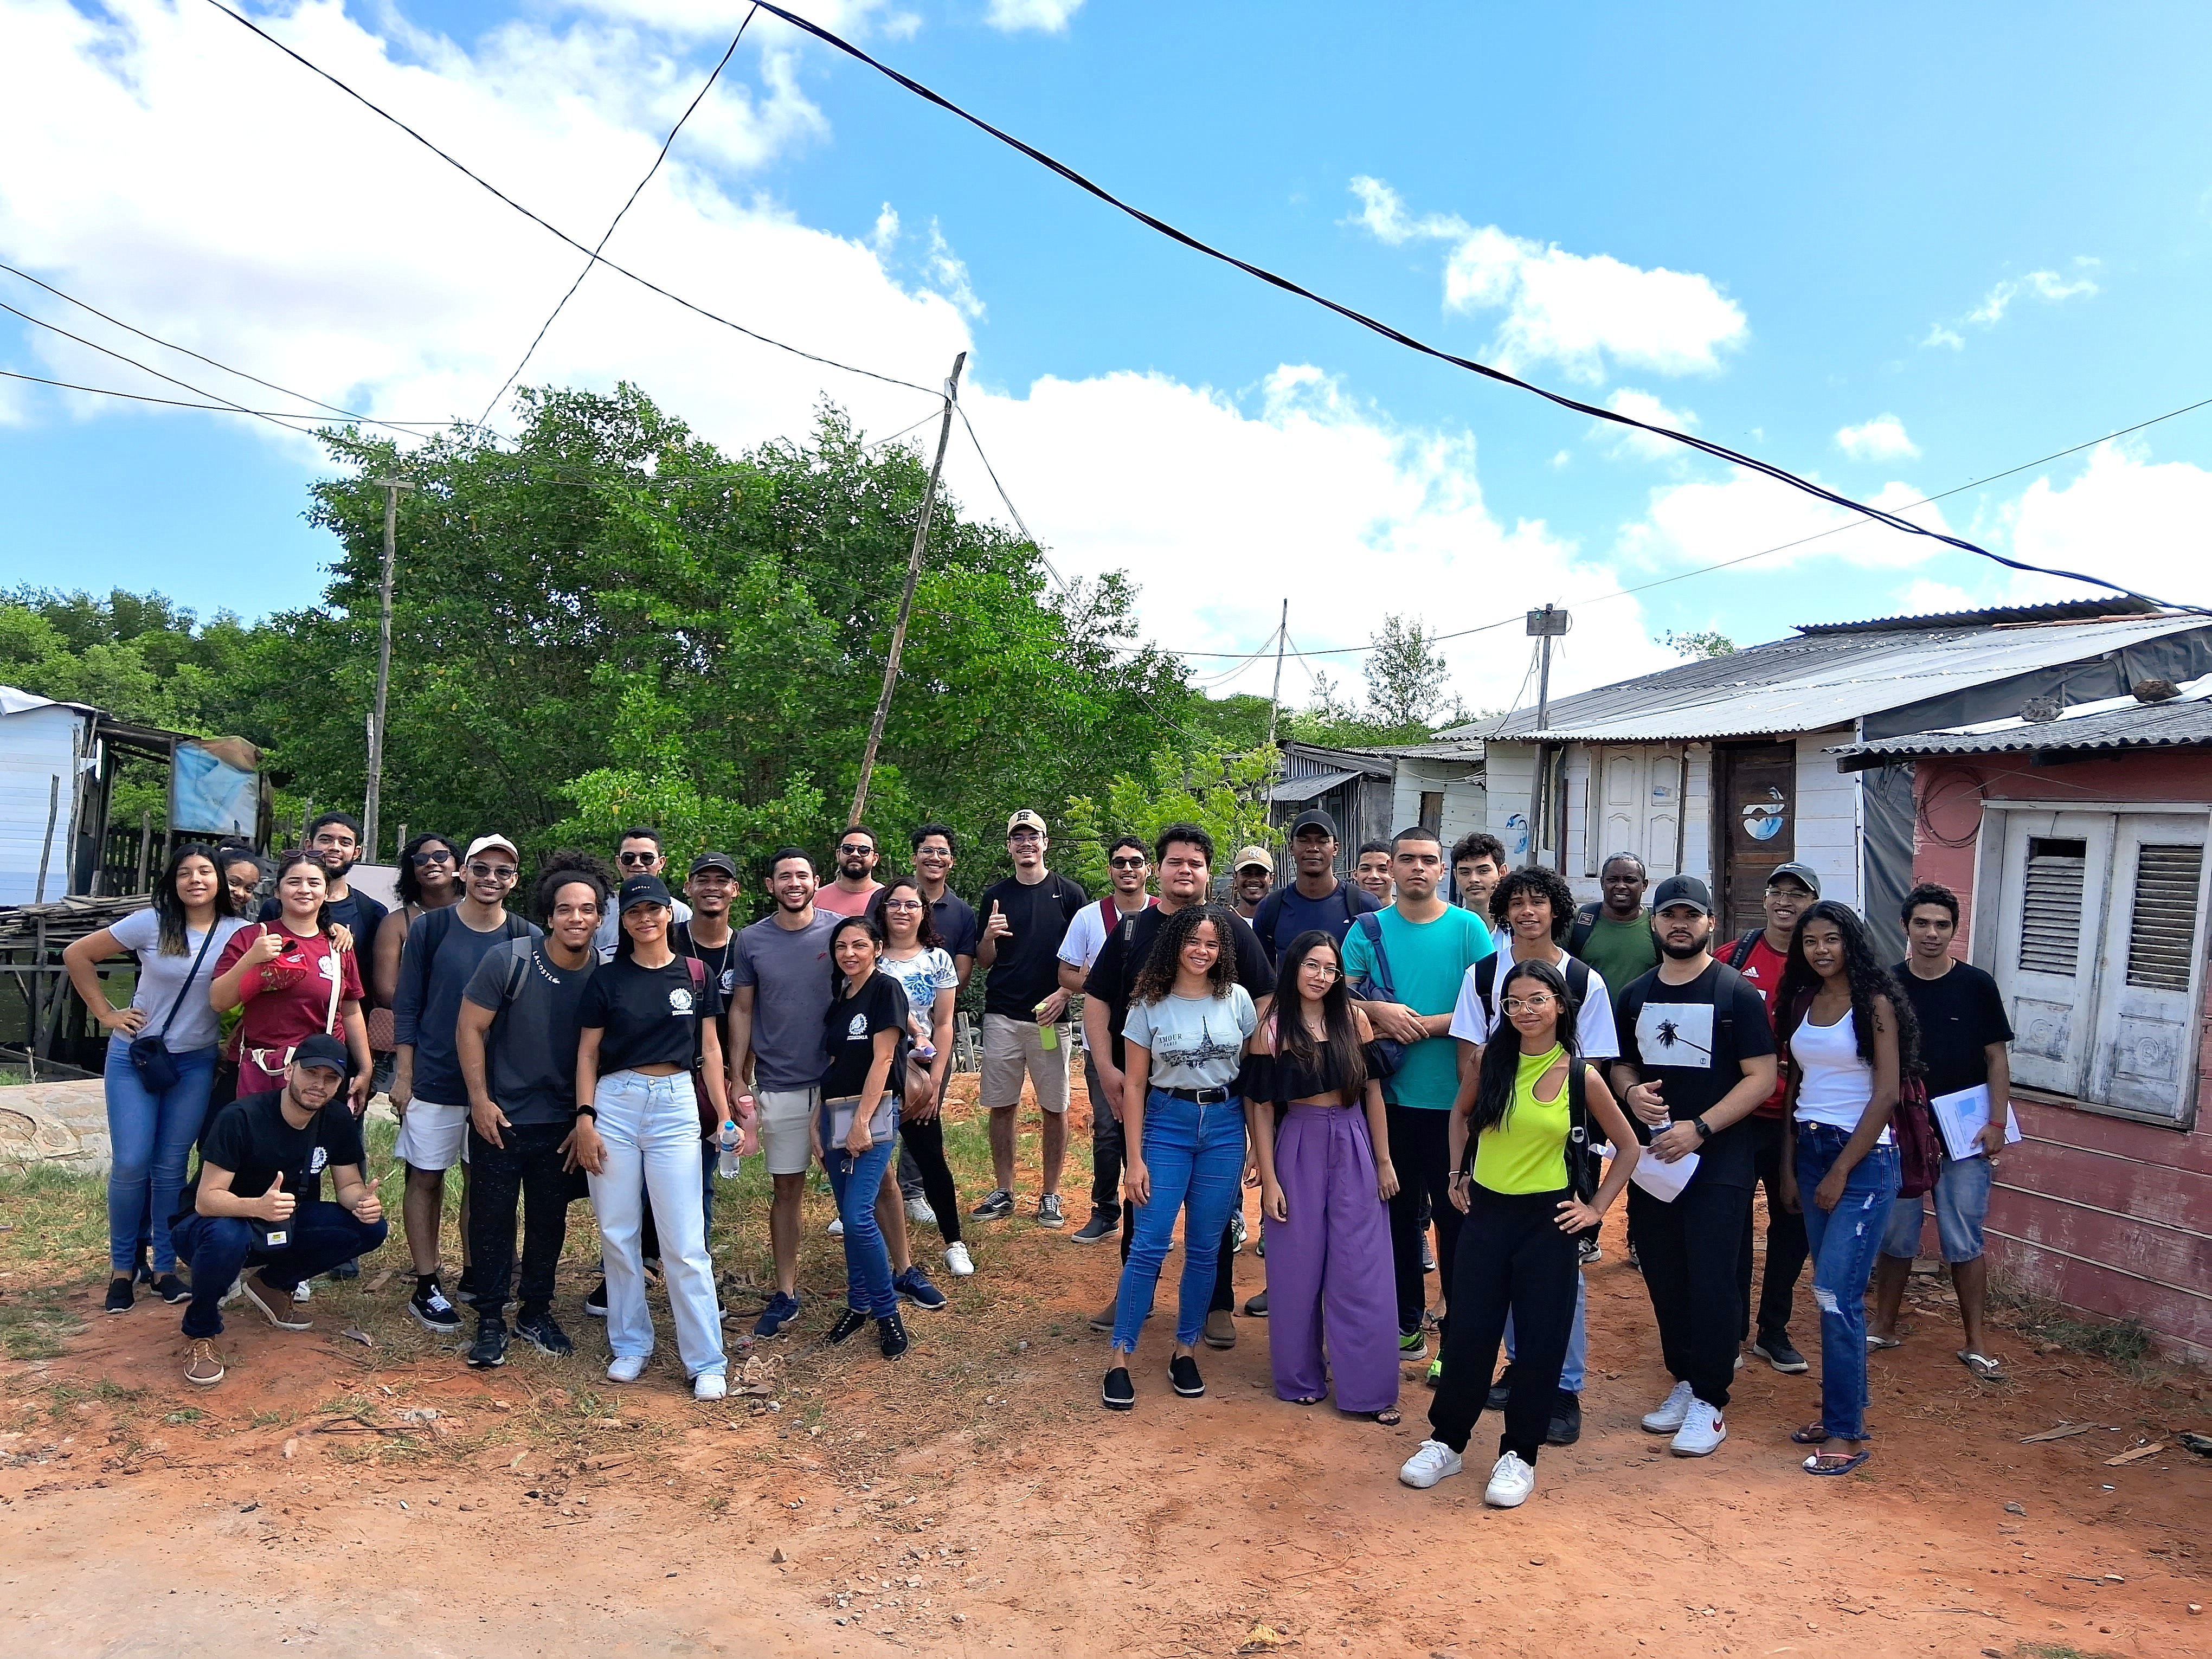 Alunos do curso de Economia da UFMA realizam coleta de dados socioeconômicos na comunidade Santa Júlia, em São Luís